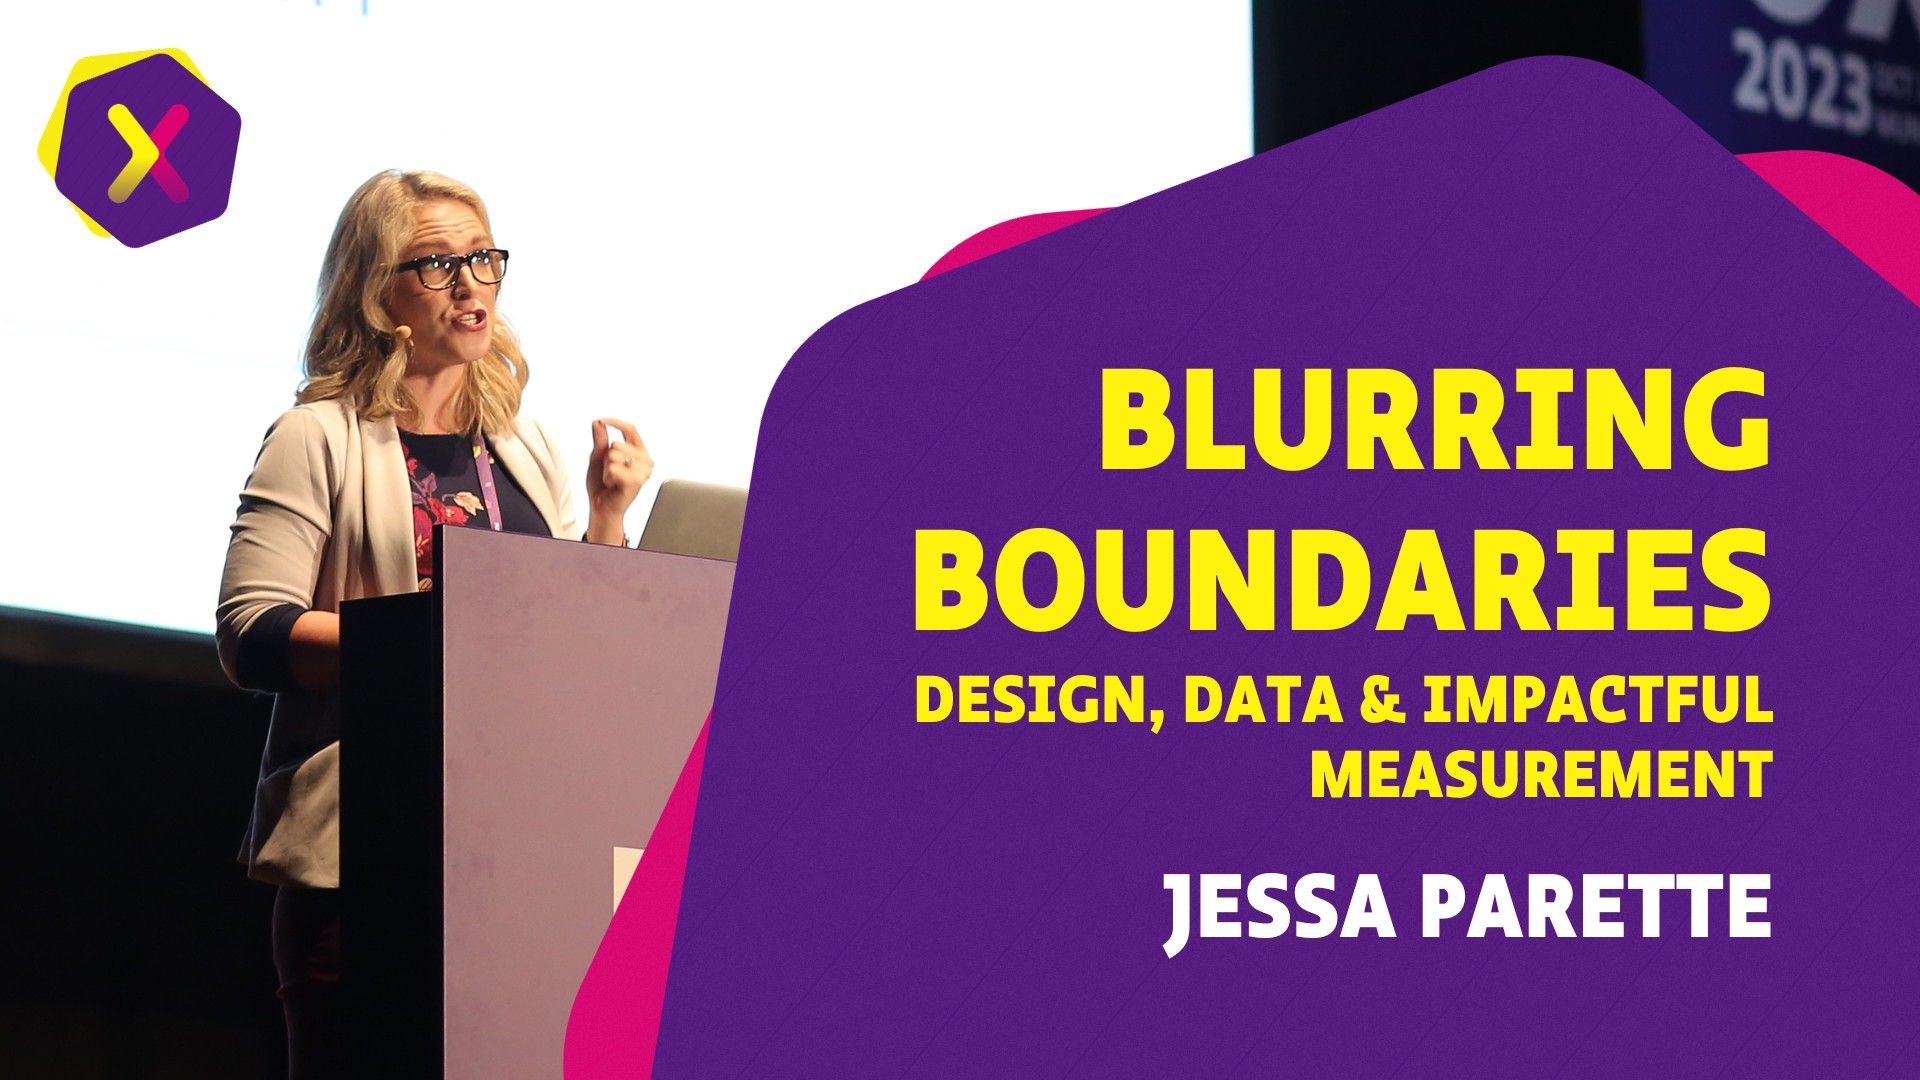 Blurring Boundaries: Design, Data & Impactful Measurement